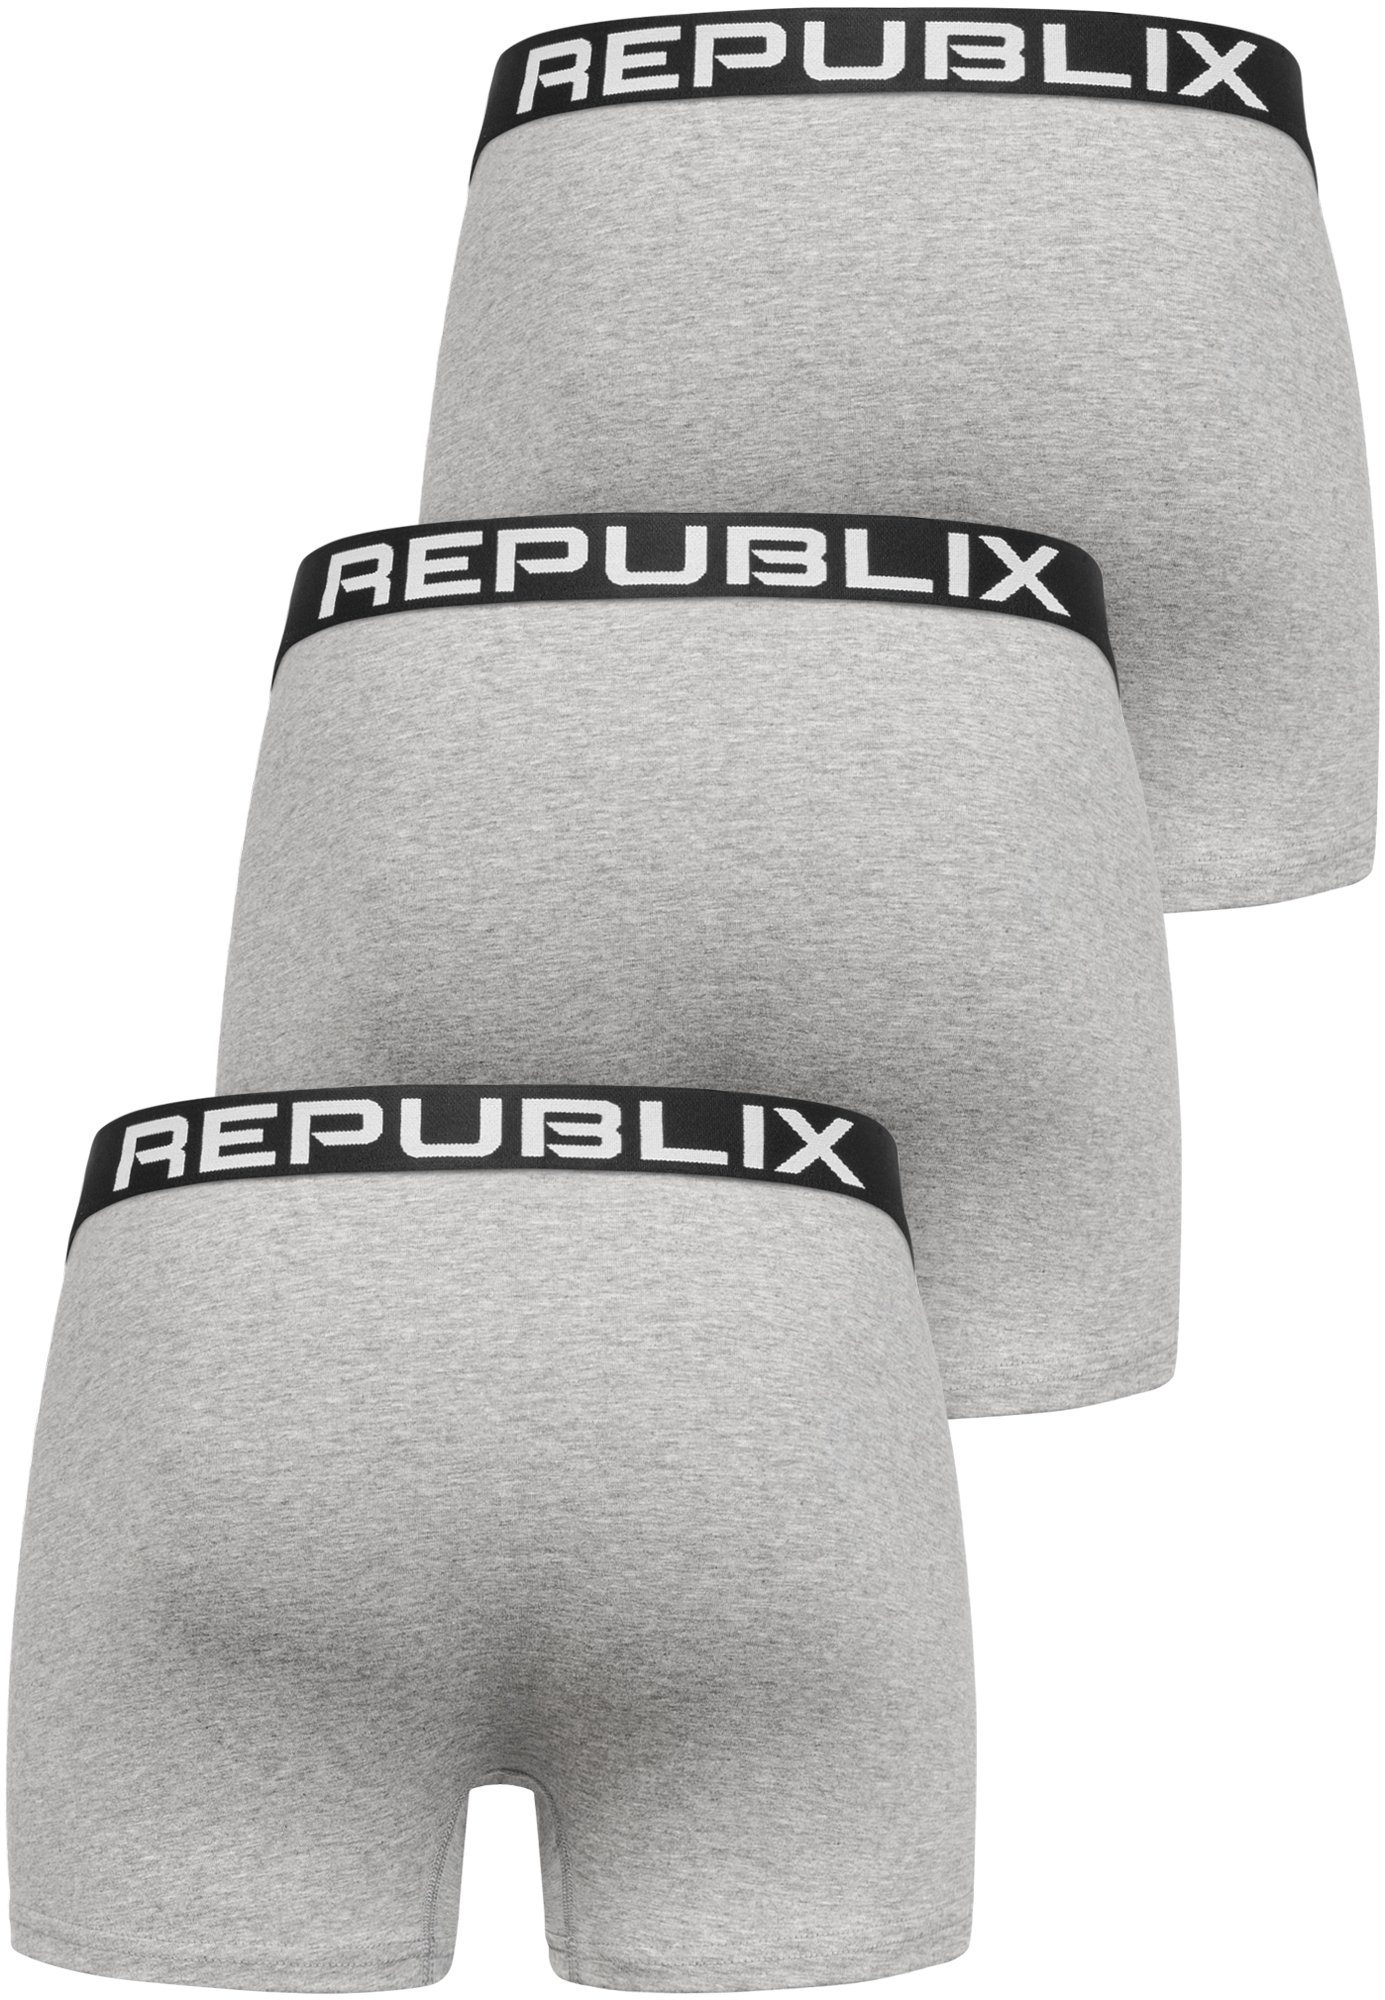 REPUBLIX Boxershorts DON (3er-Pack) Baumwolle Unterhose Herren Männer Unterwäsche Grau/Schwarz